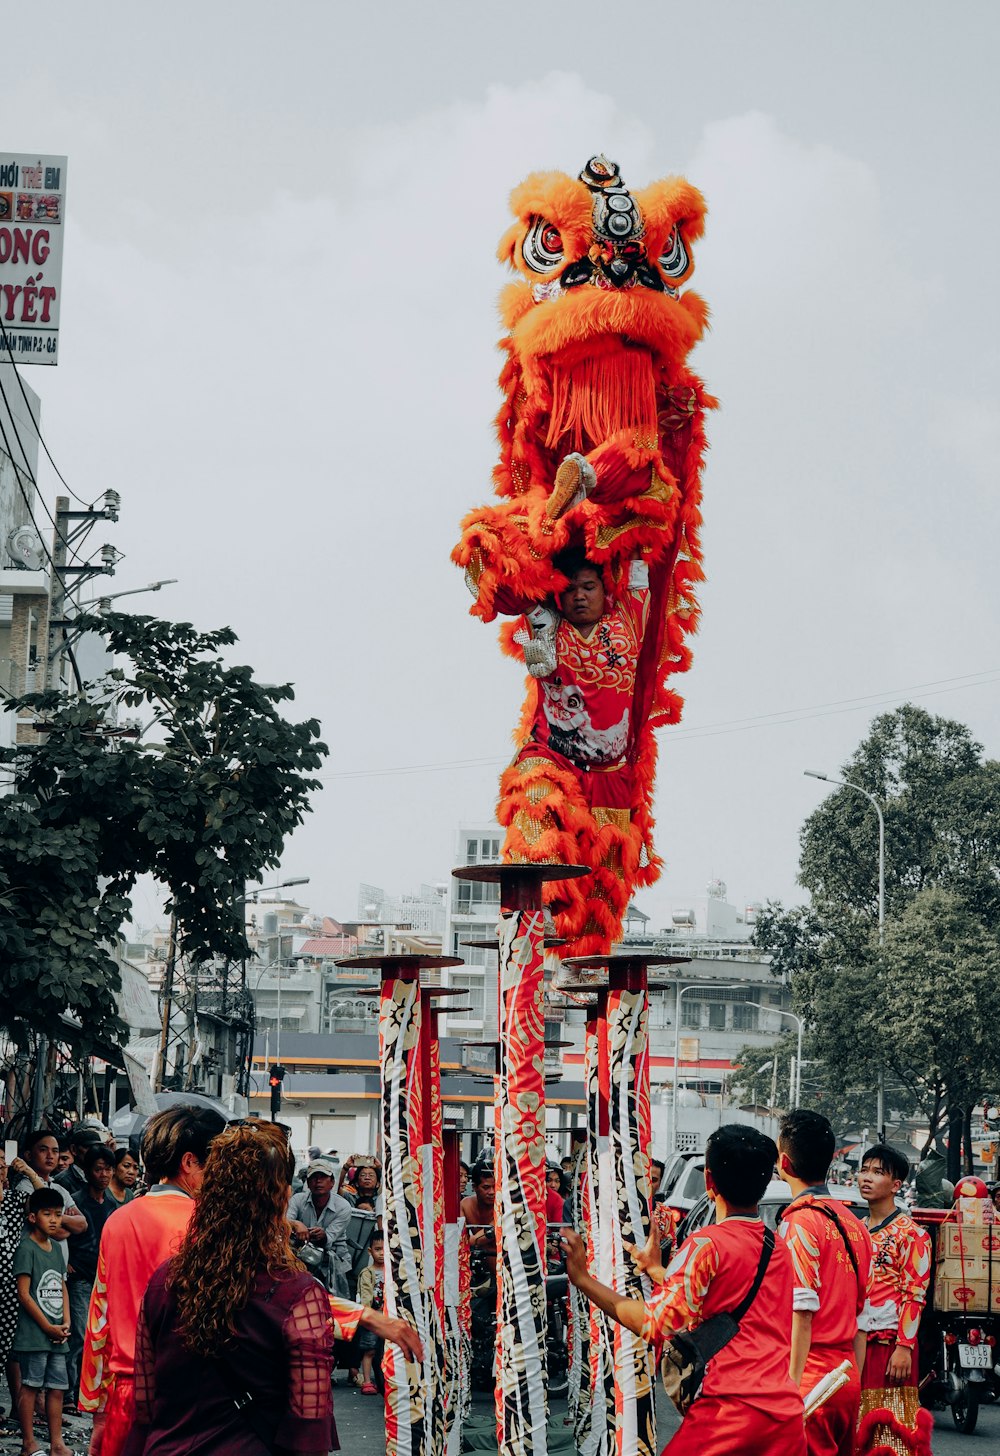 Persone che camminano sulla strada con la statua del drago rosso durante il giorno